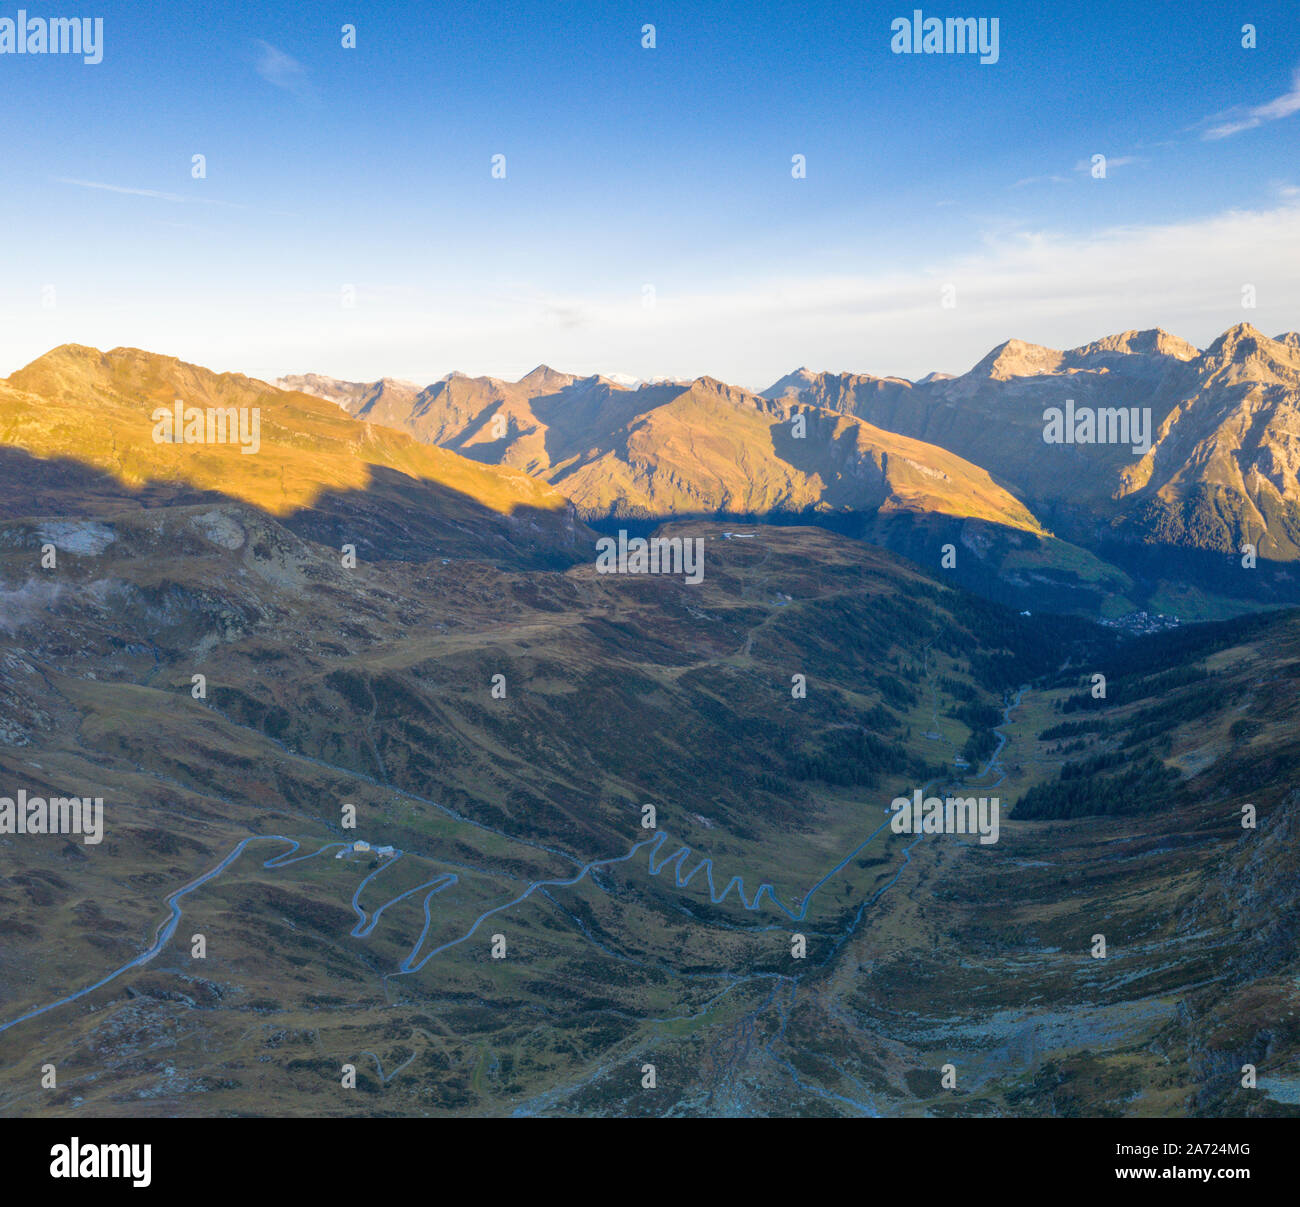 Vue aérienne de virages en épingle de la route vers la montagne cf Alpina Splugen, canton des Grisons, Suisse Banque D'Images